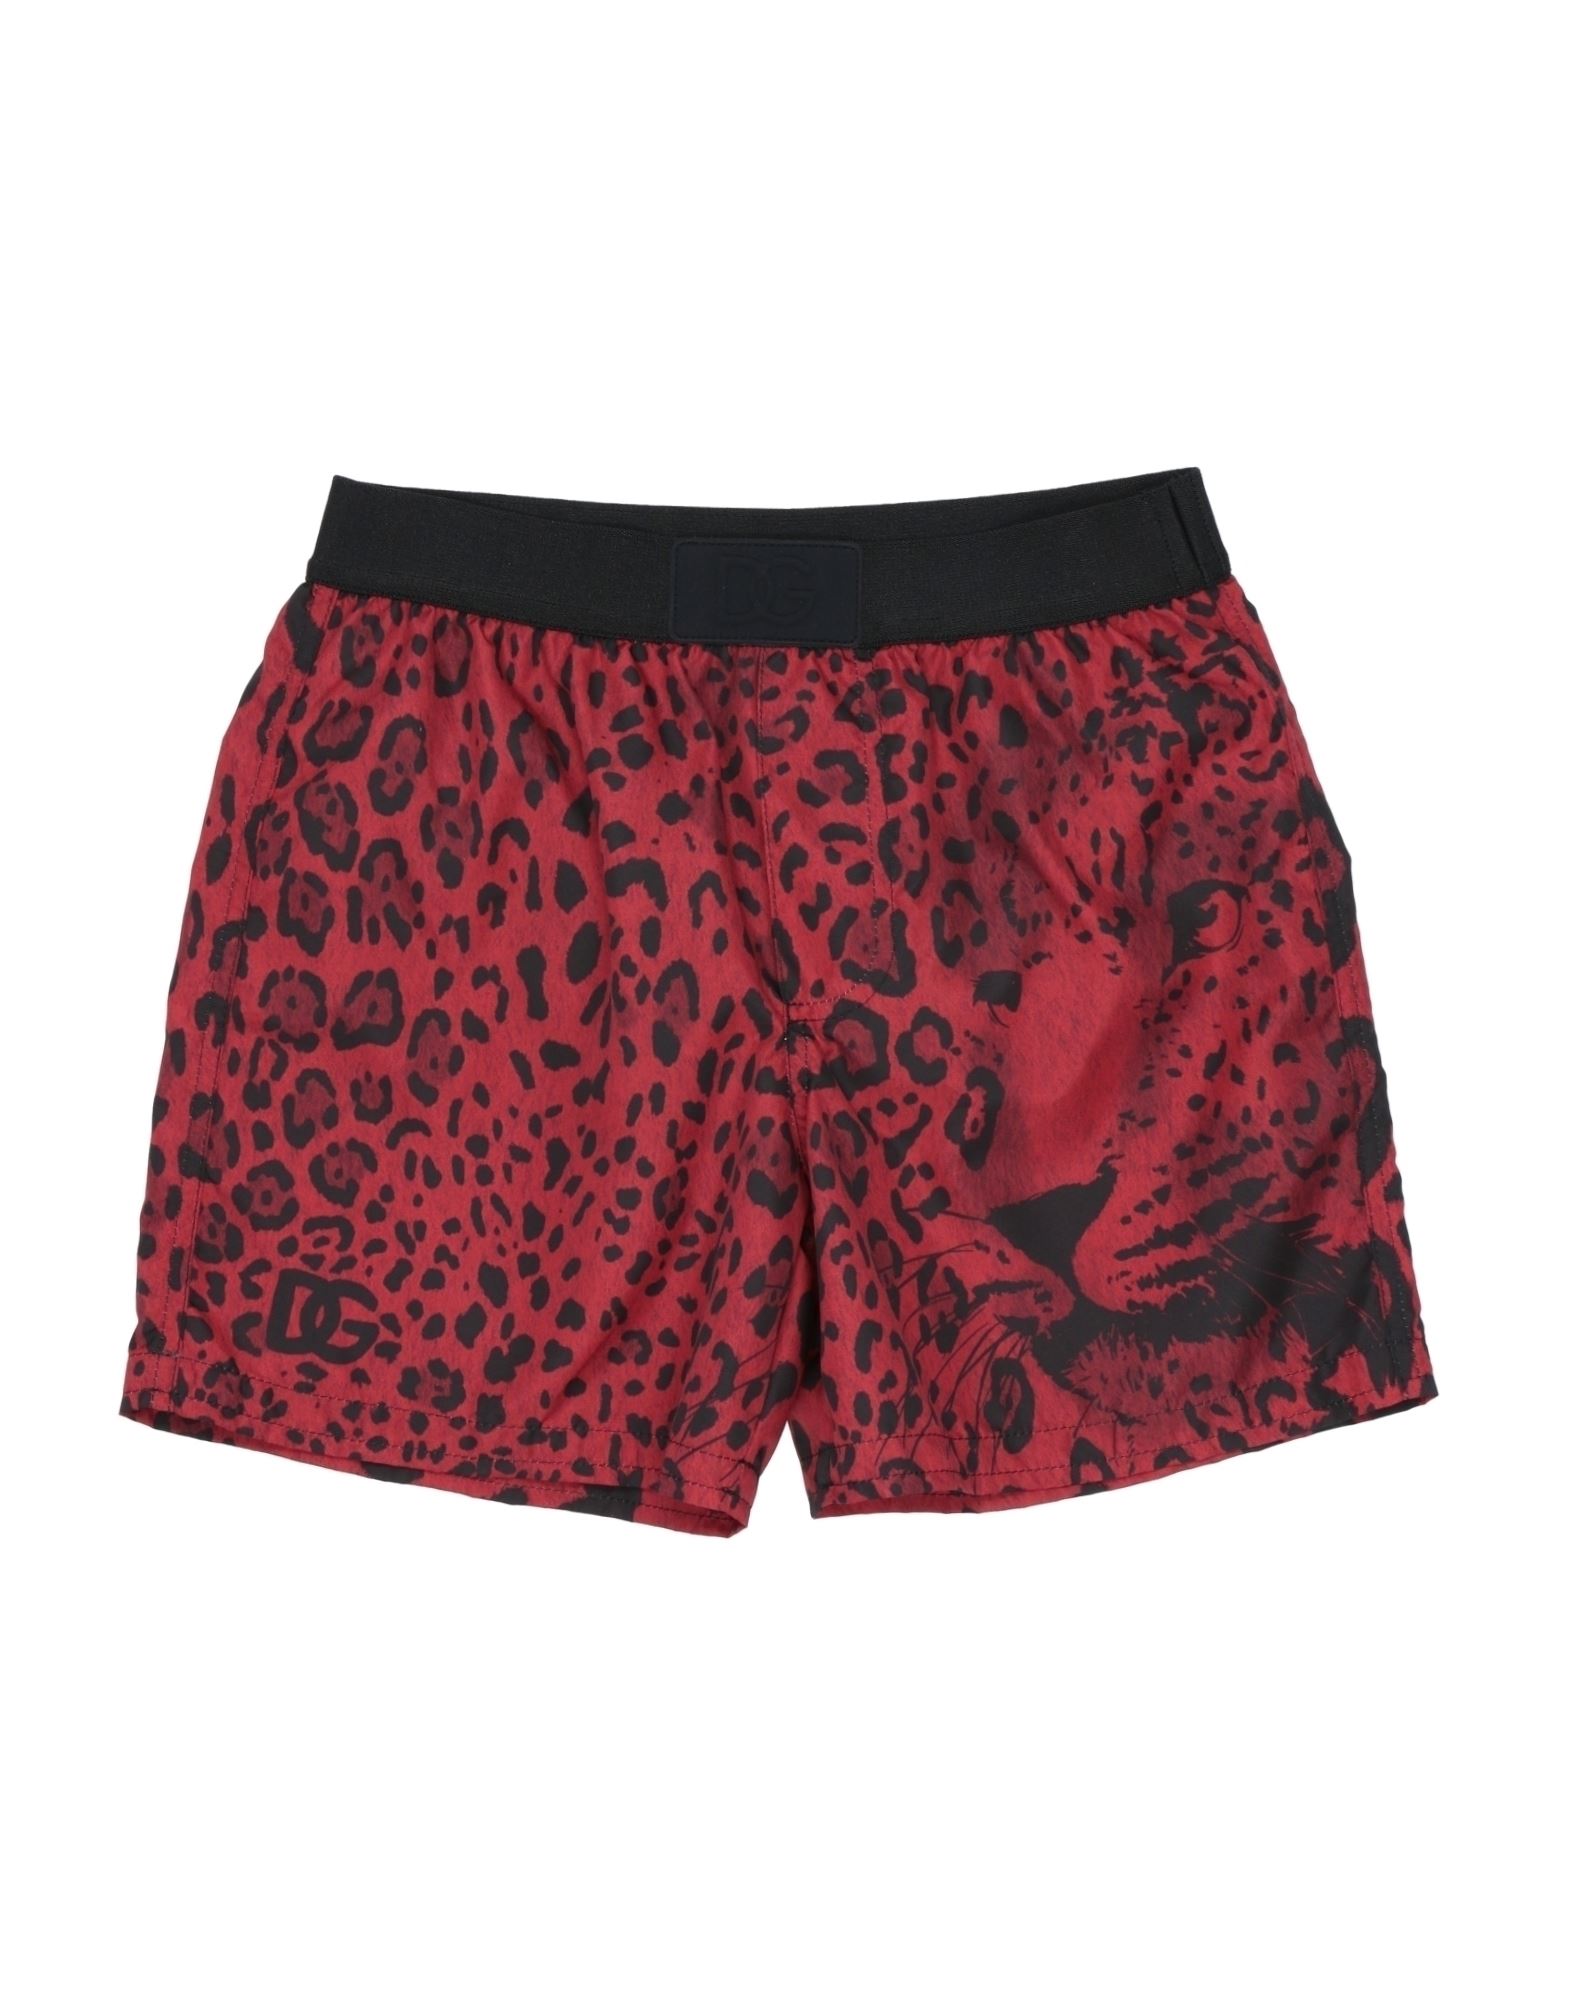 Dolce & Gabbana Kids' Swim Trunks In Red